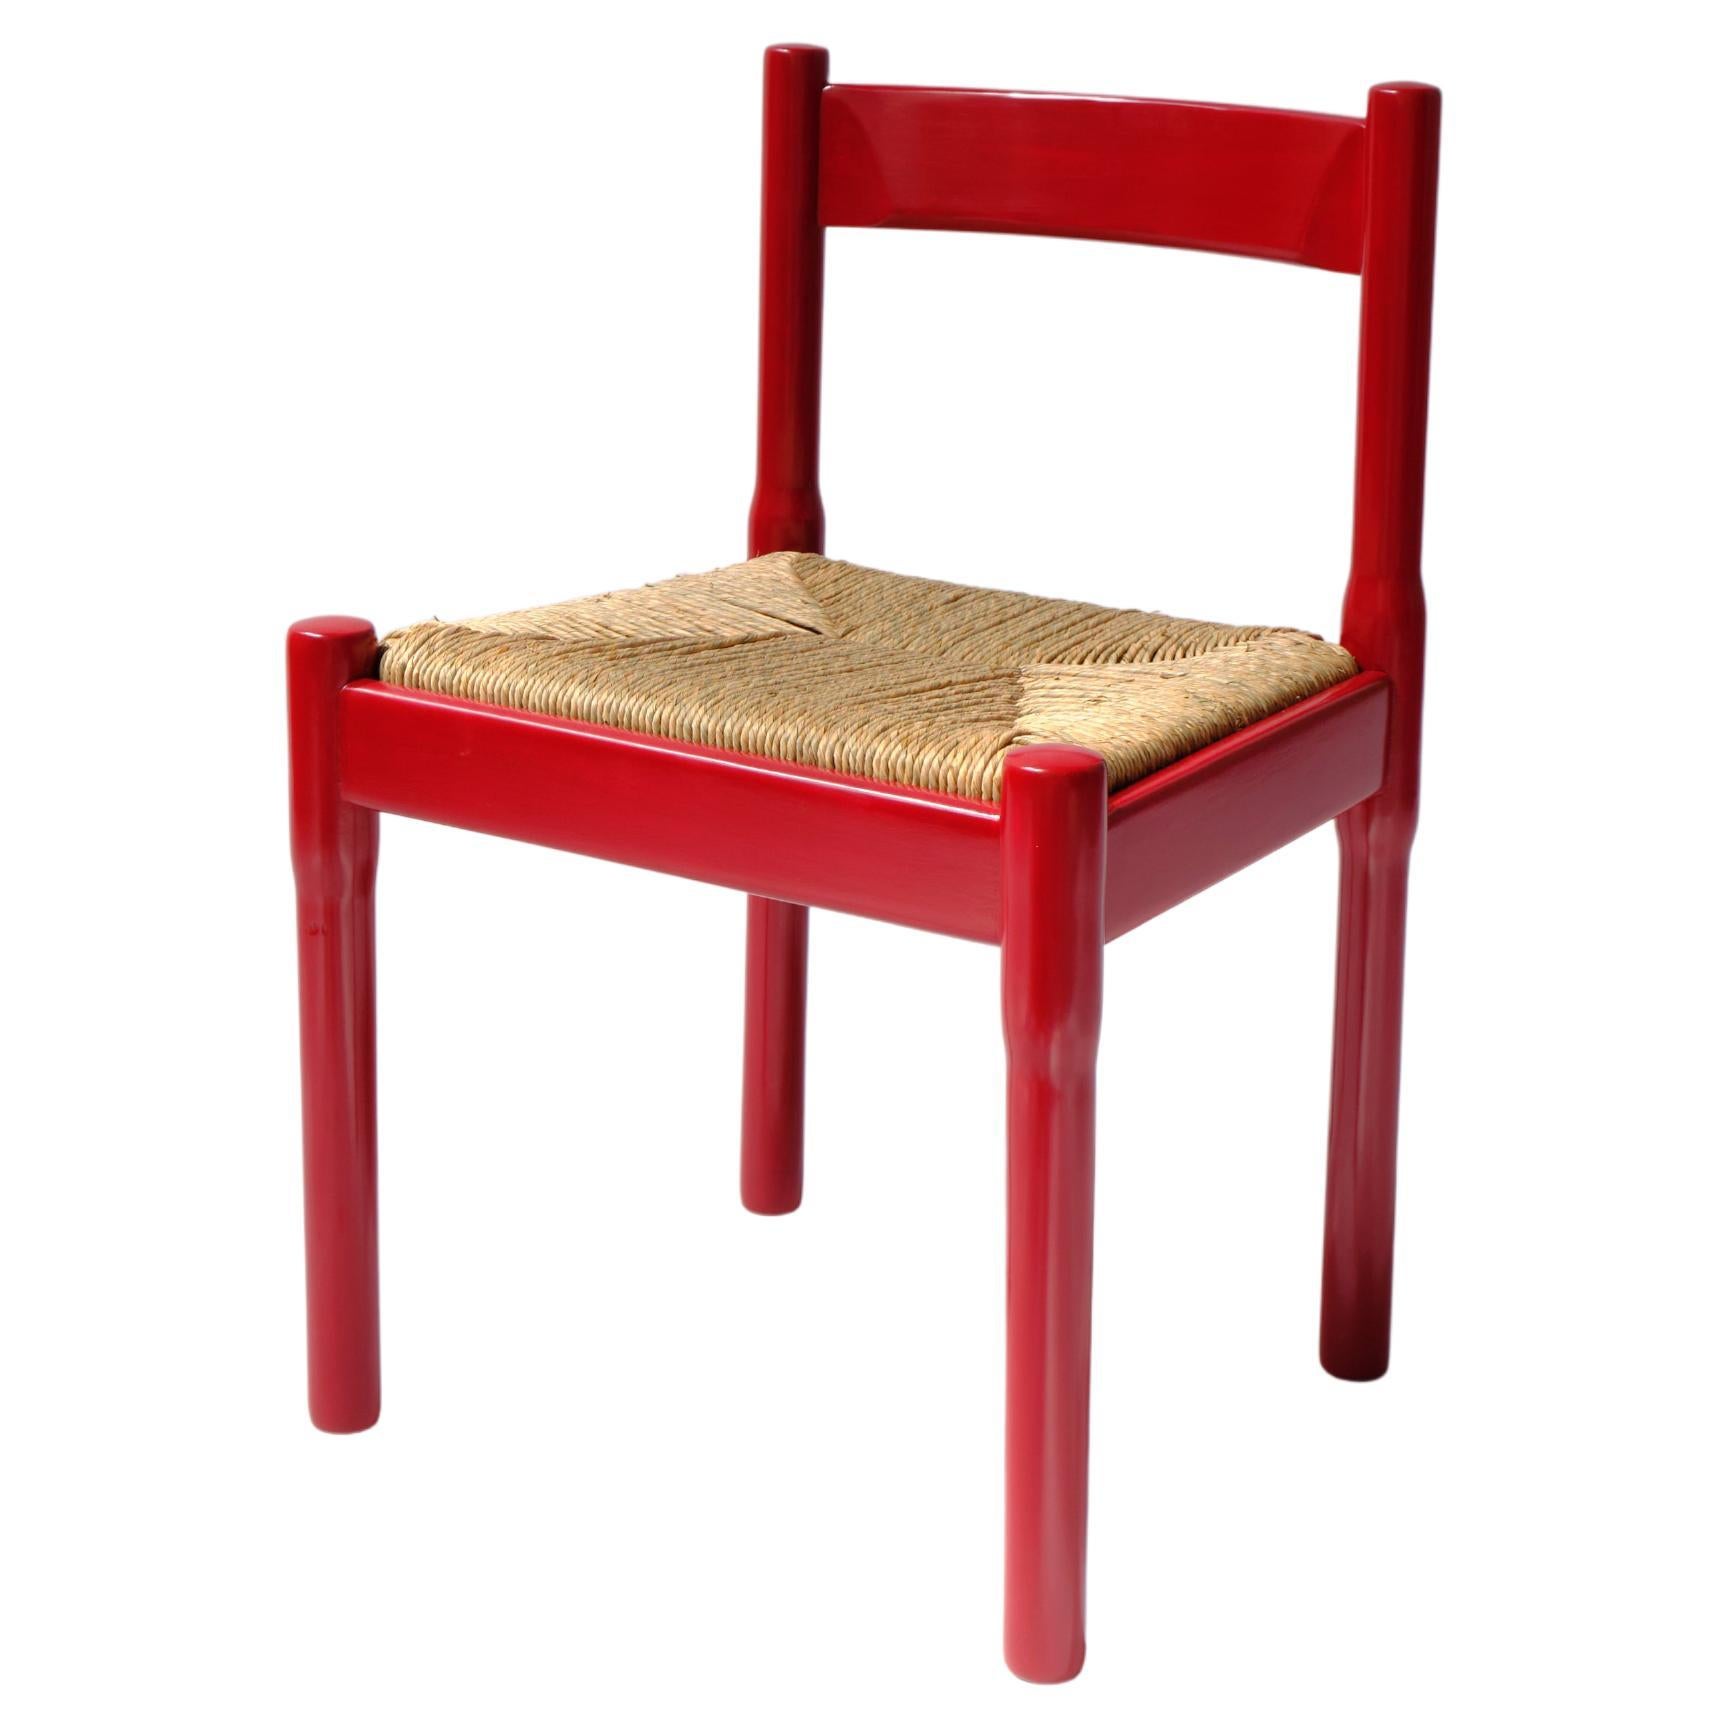 Chaise de salle à manger Carimate de Vico Magistretti pour Habitat/Conran, rouge